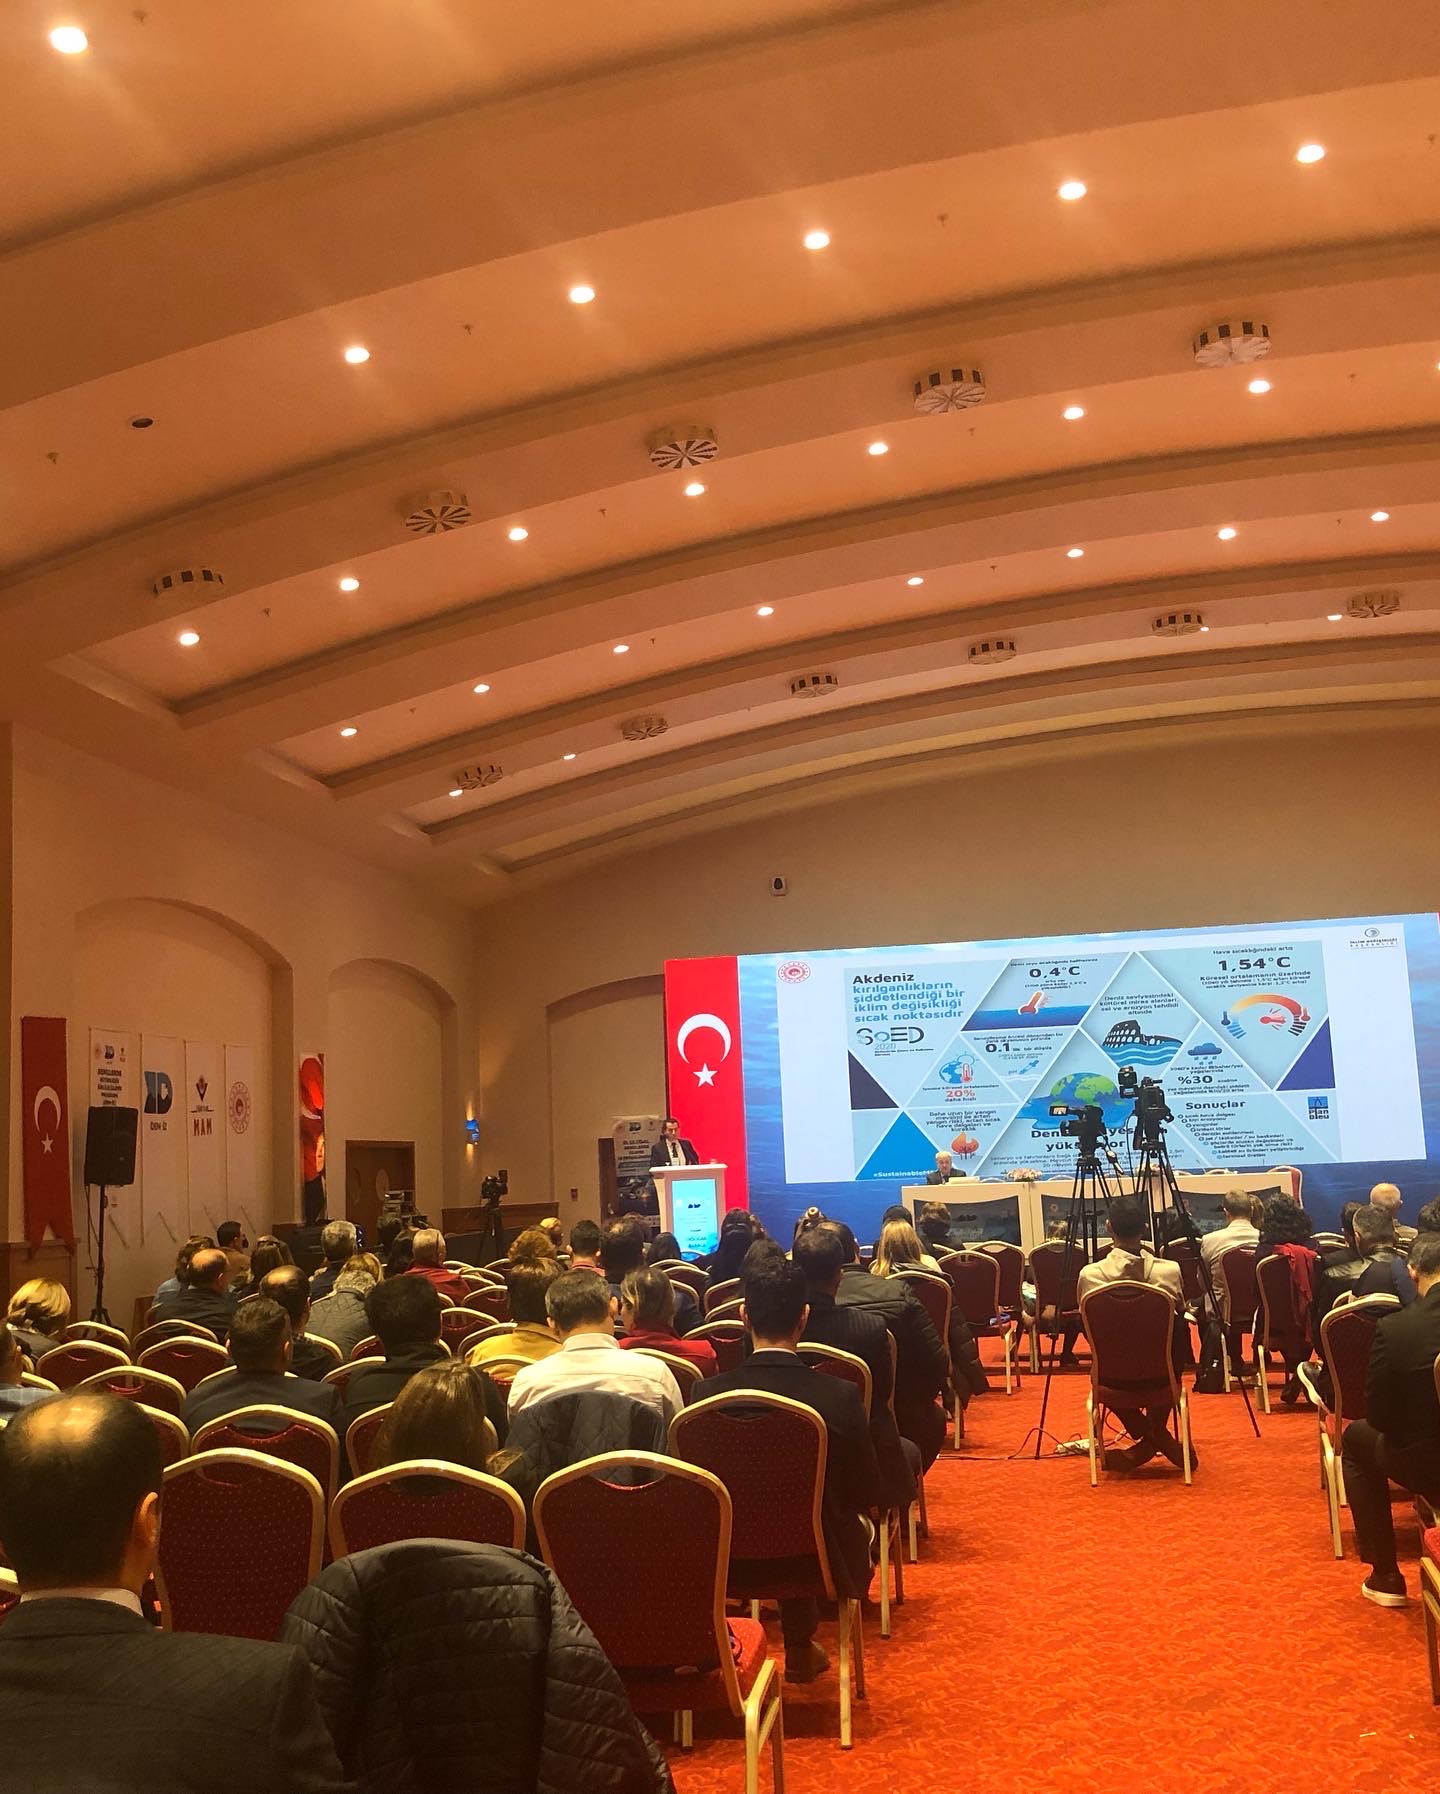 III. Ulusal Denizlerde İzleme ve Değerlendirme Sempozyumu 06-09 Aralık 2022 tarihinde Antalya’da düzenlendi